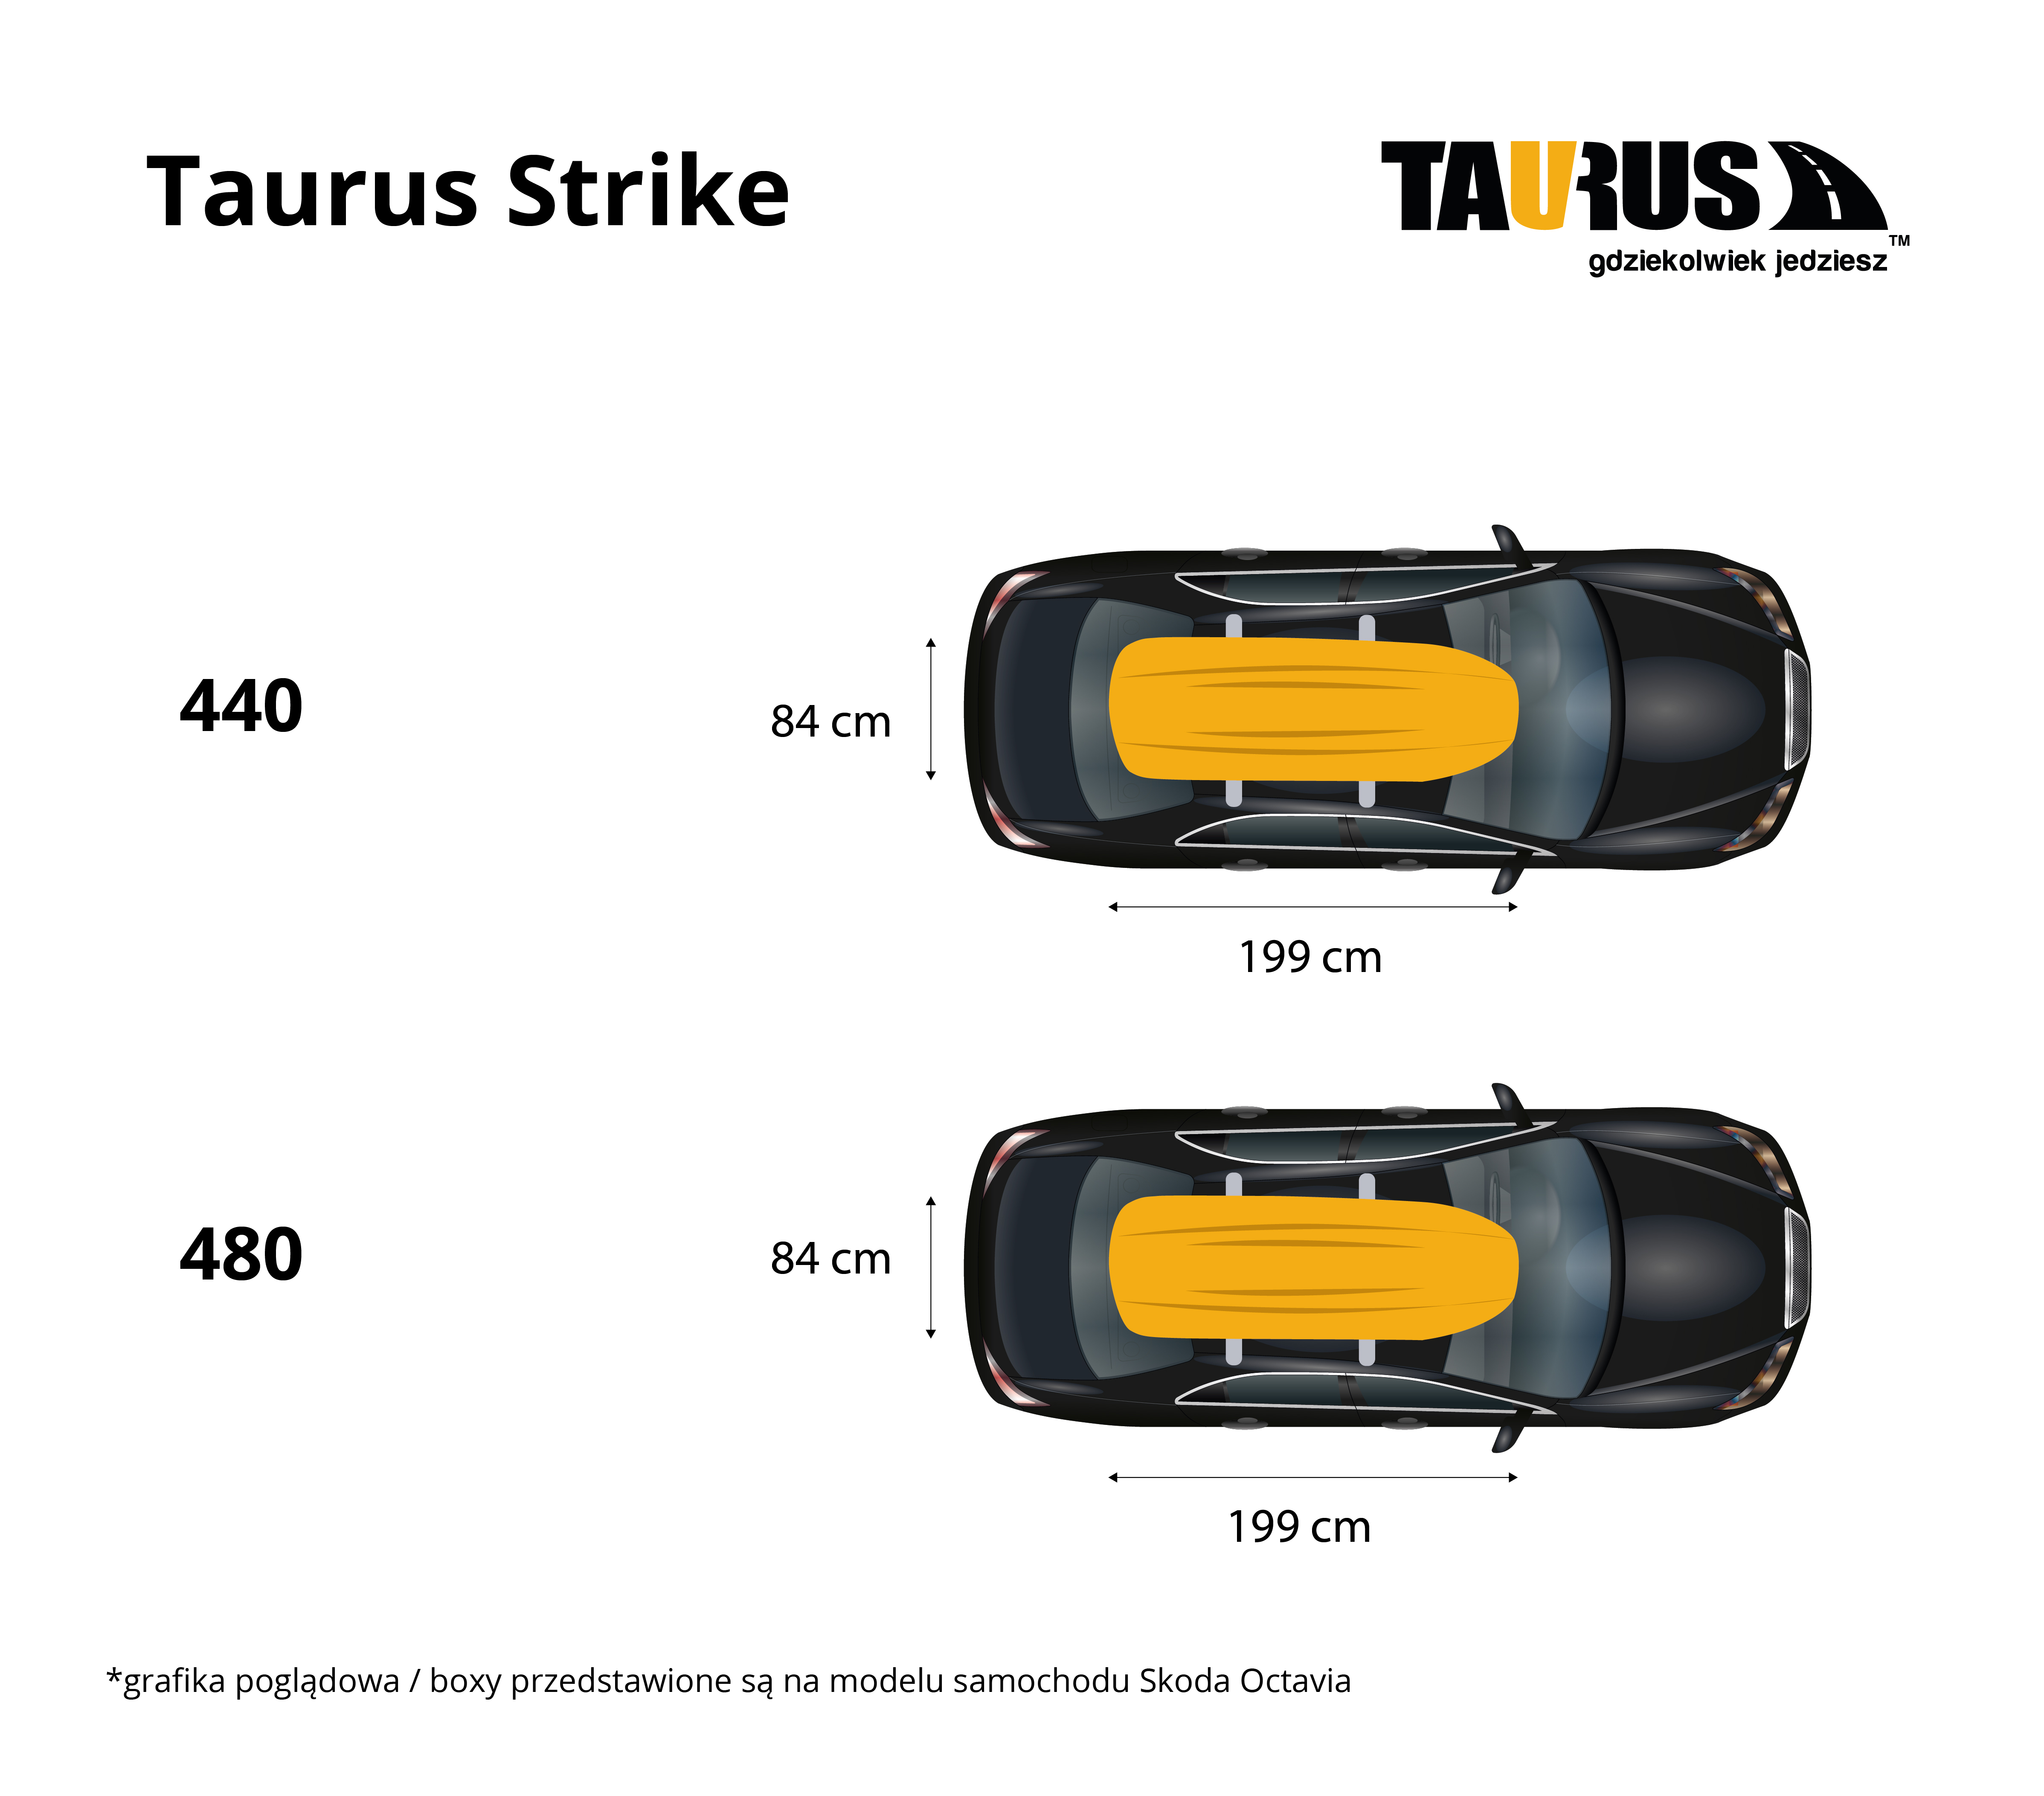 Taurus Strike